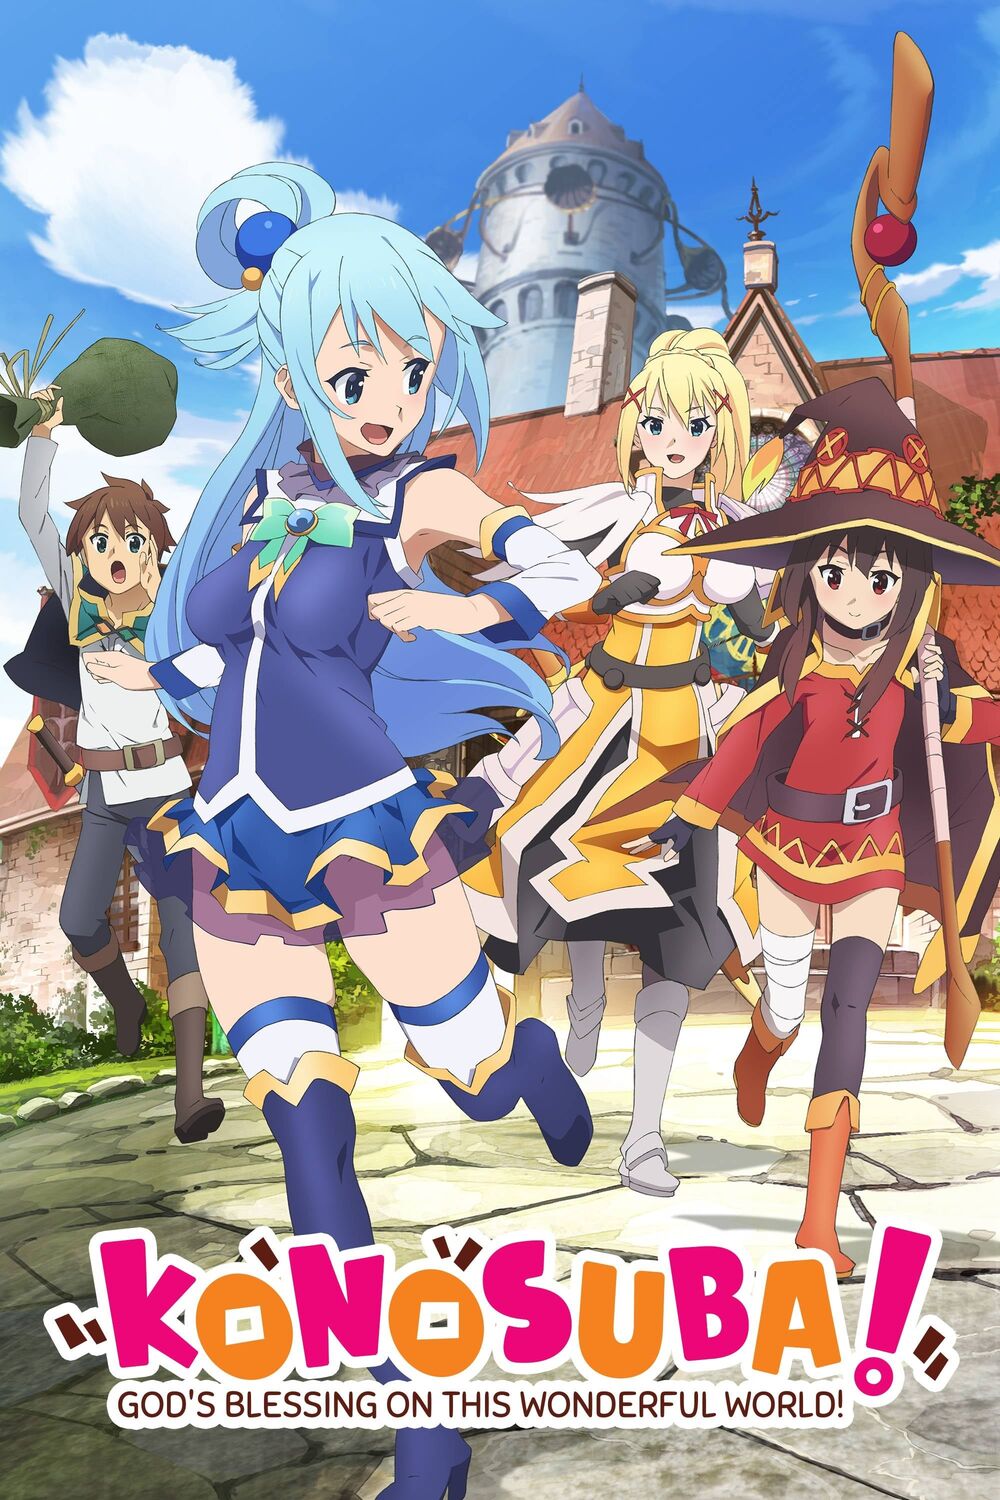 Filme anime de KonoSuba em Julho de 2019